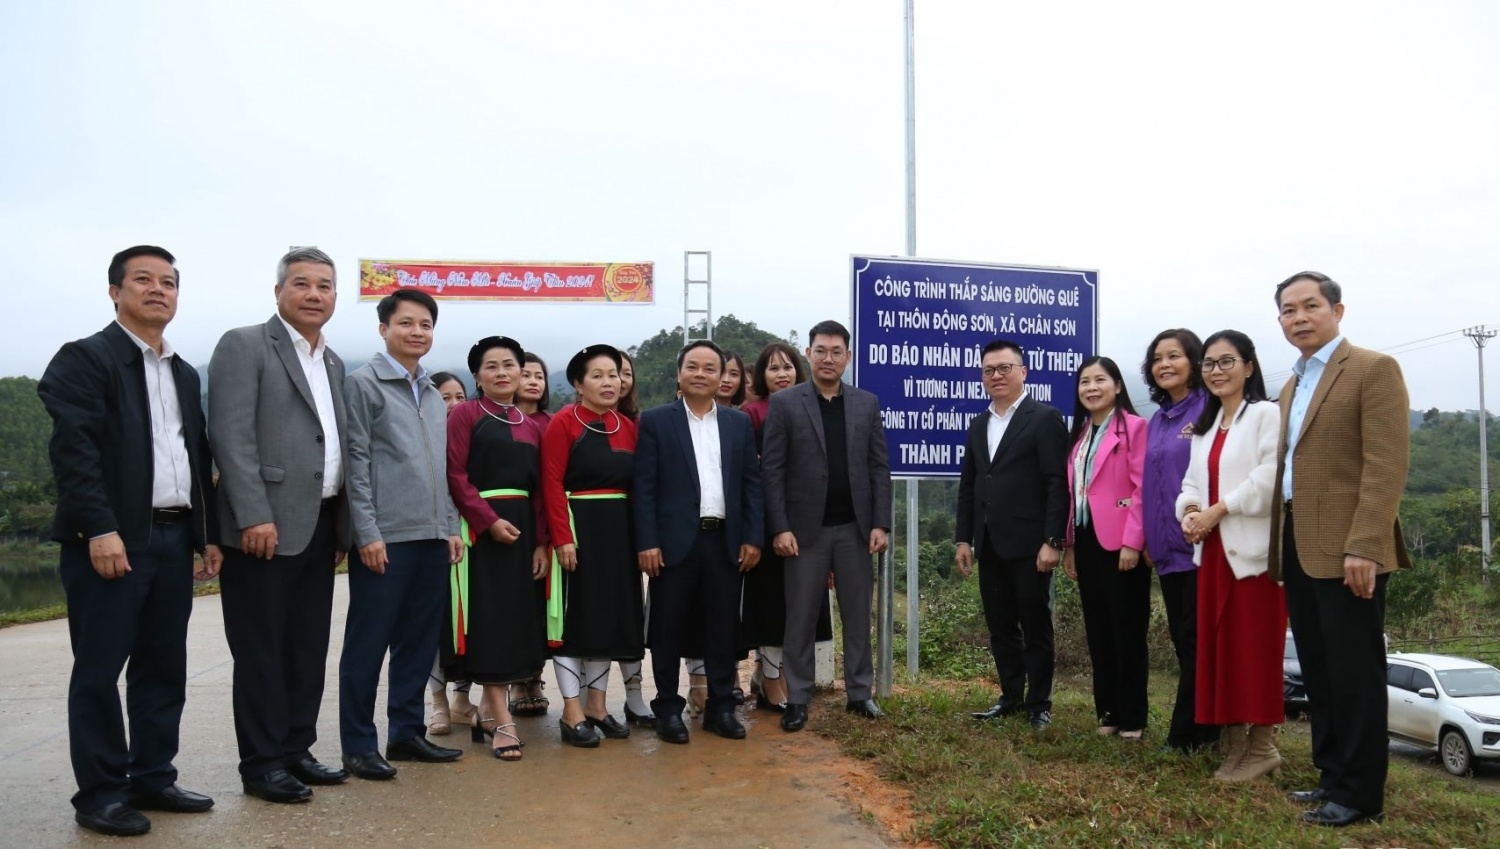 Petrovietnam trao tặng 500 triệu đồng cho quỹ Tết vì người nghèo tỉnh Tuyên Quang